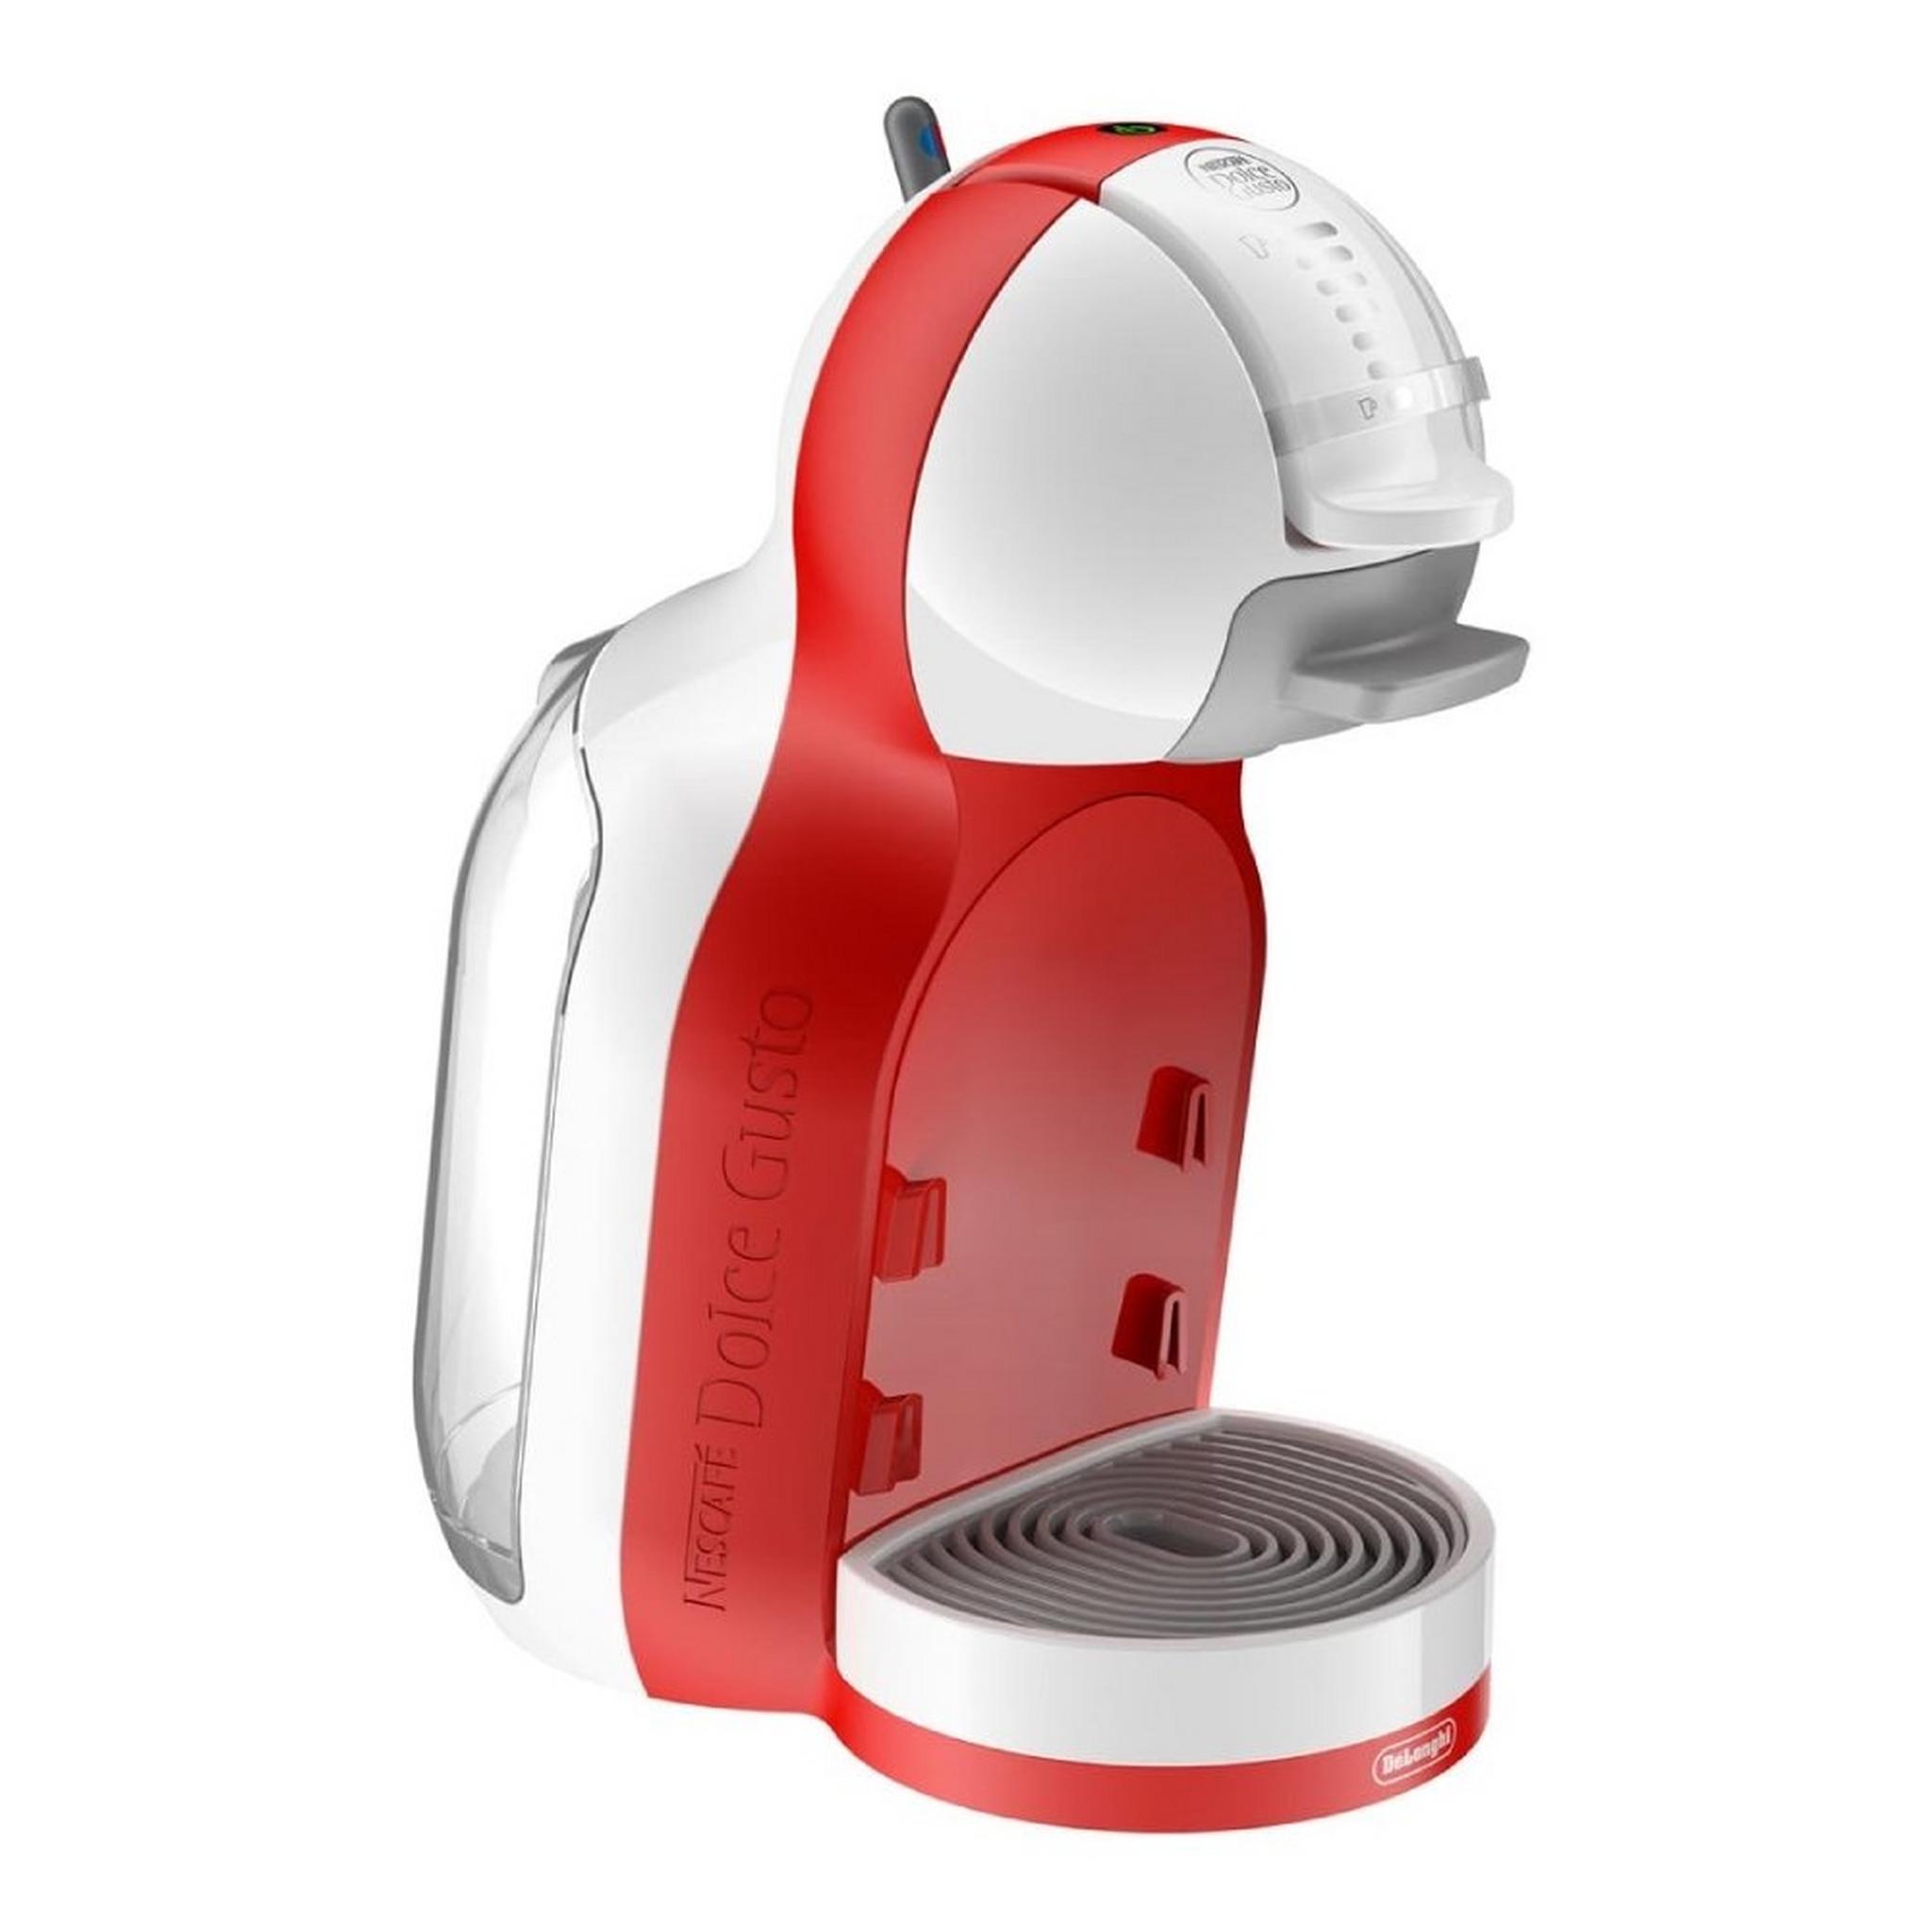 Delonghi 1460W 0.8L Mini Me Coffee Maker - White/Red